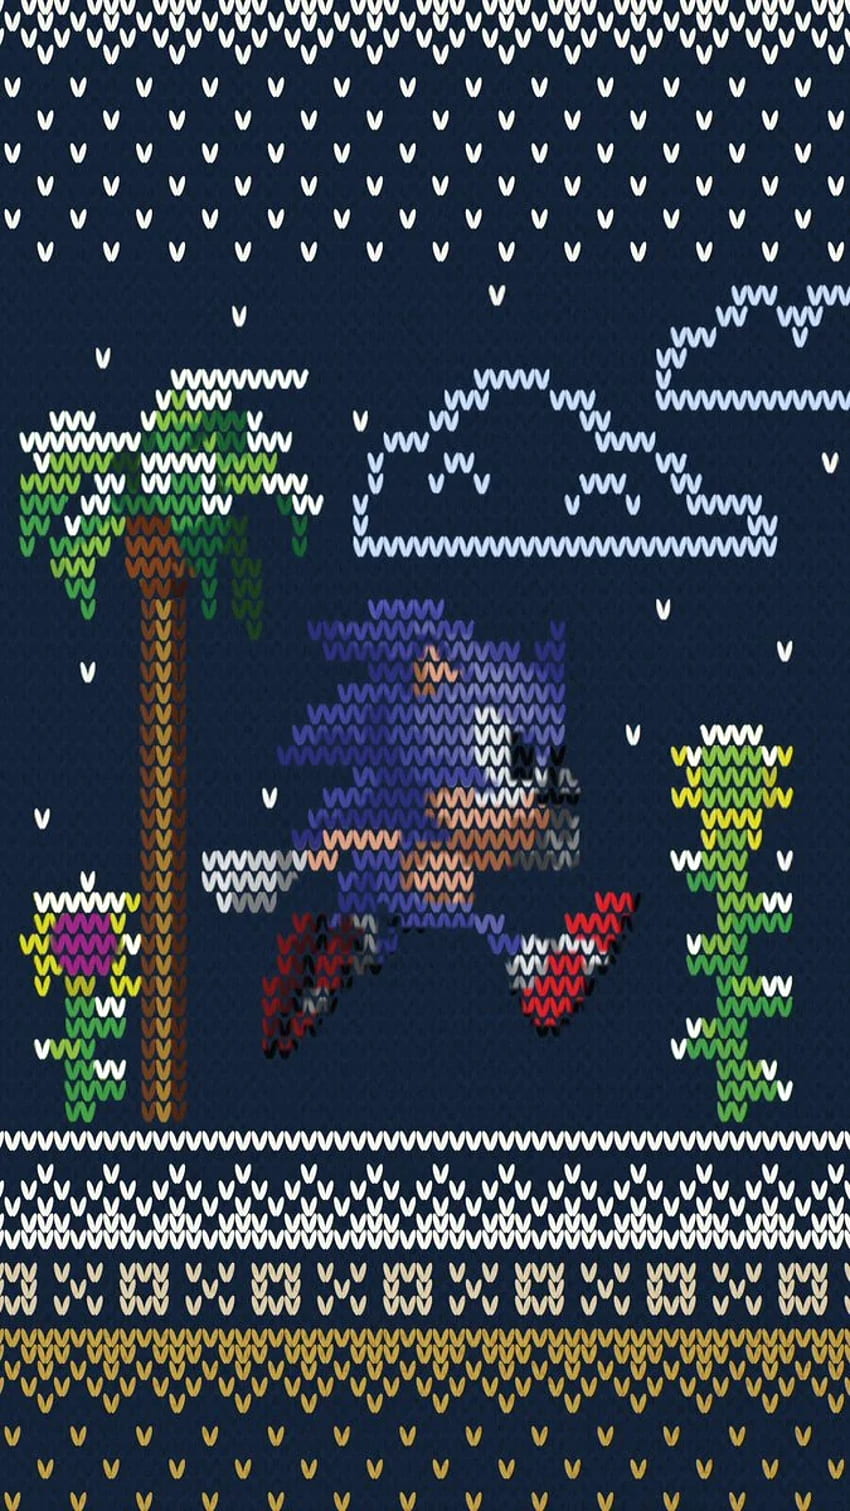 Sonic the Hedgehog - Wir haben ein winterliches Mobile gemacht, um Ihnen den Start in die Weihnachtszeit zu erleichtern! HD-Handy-Hintergrundbild